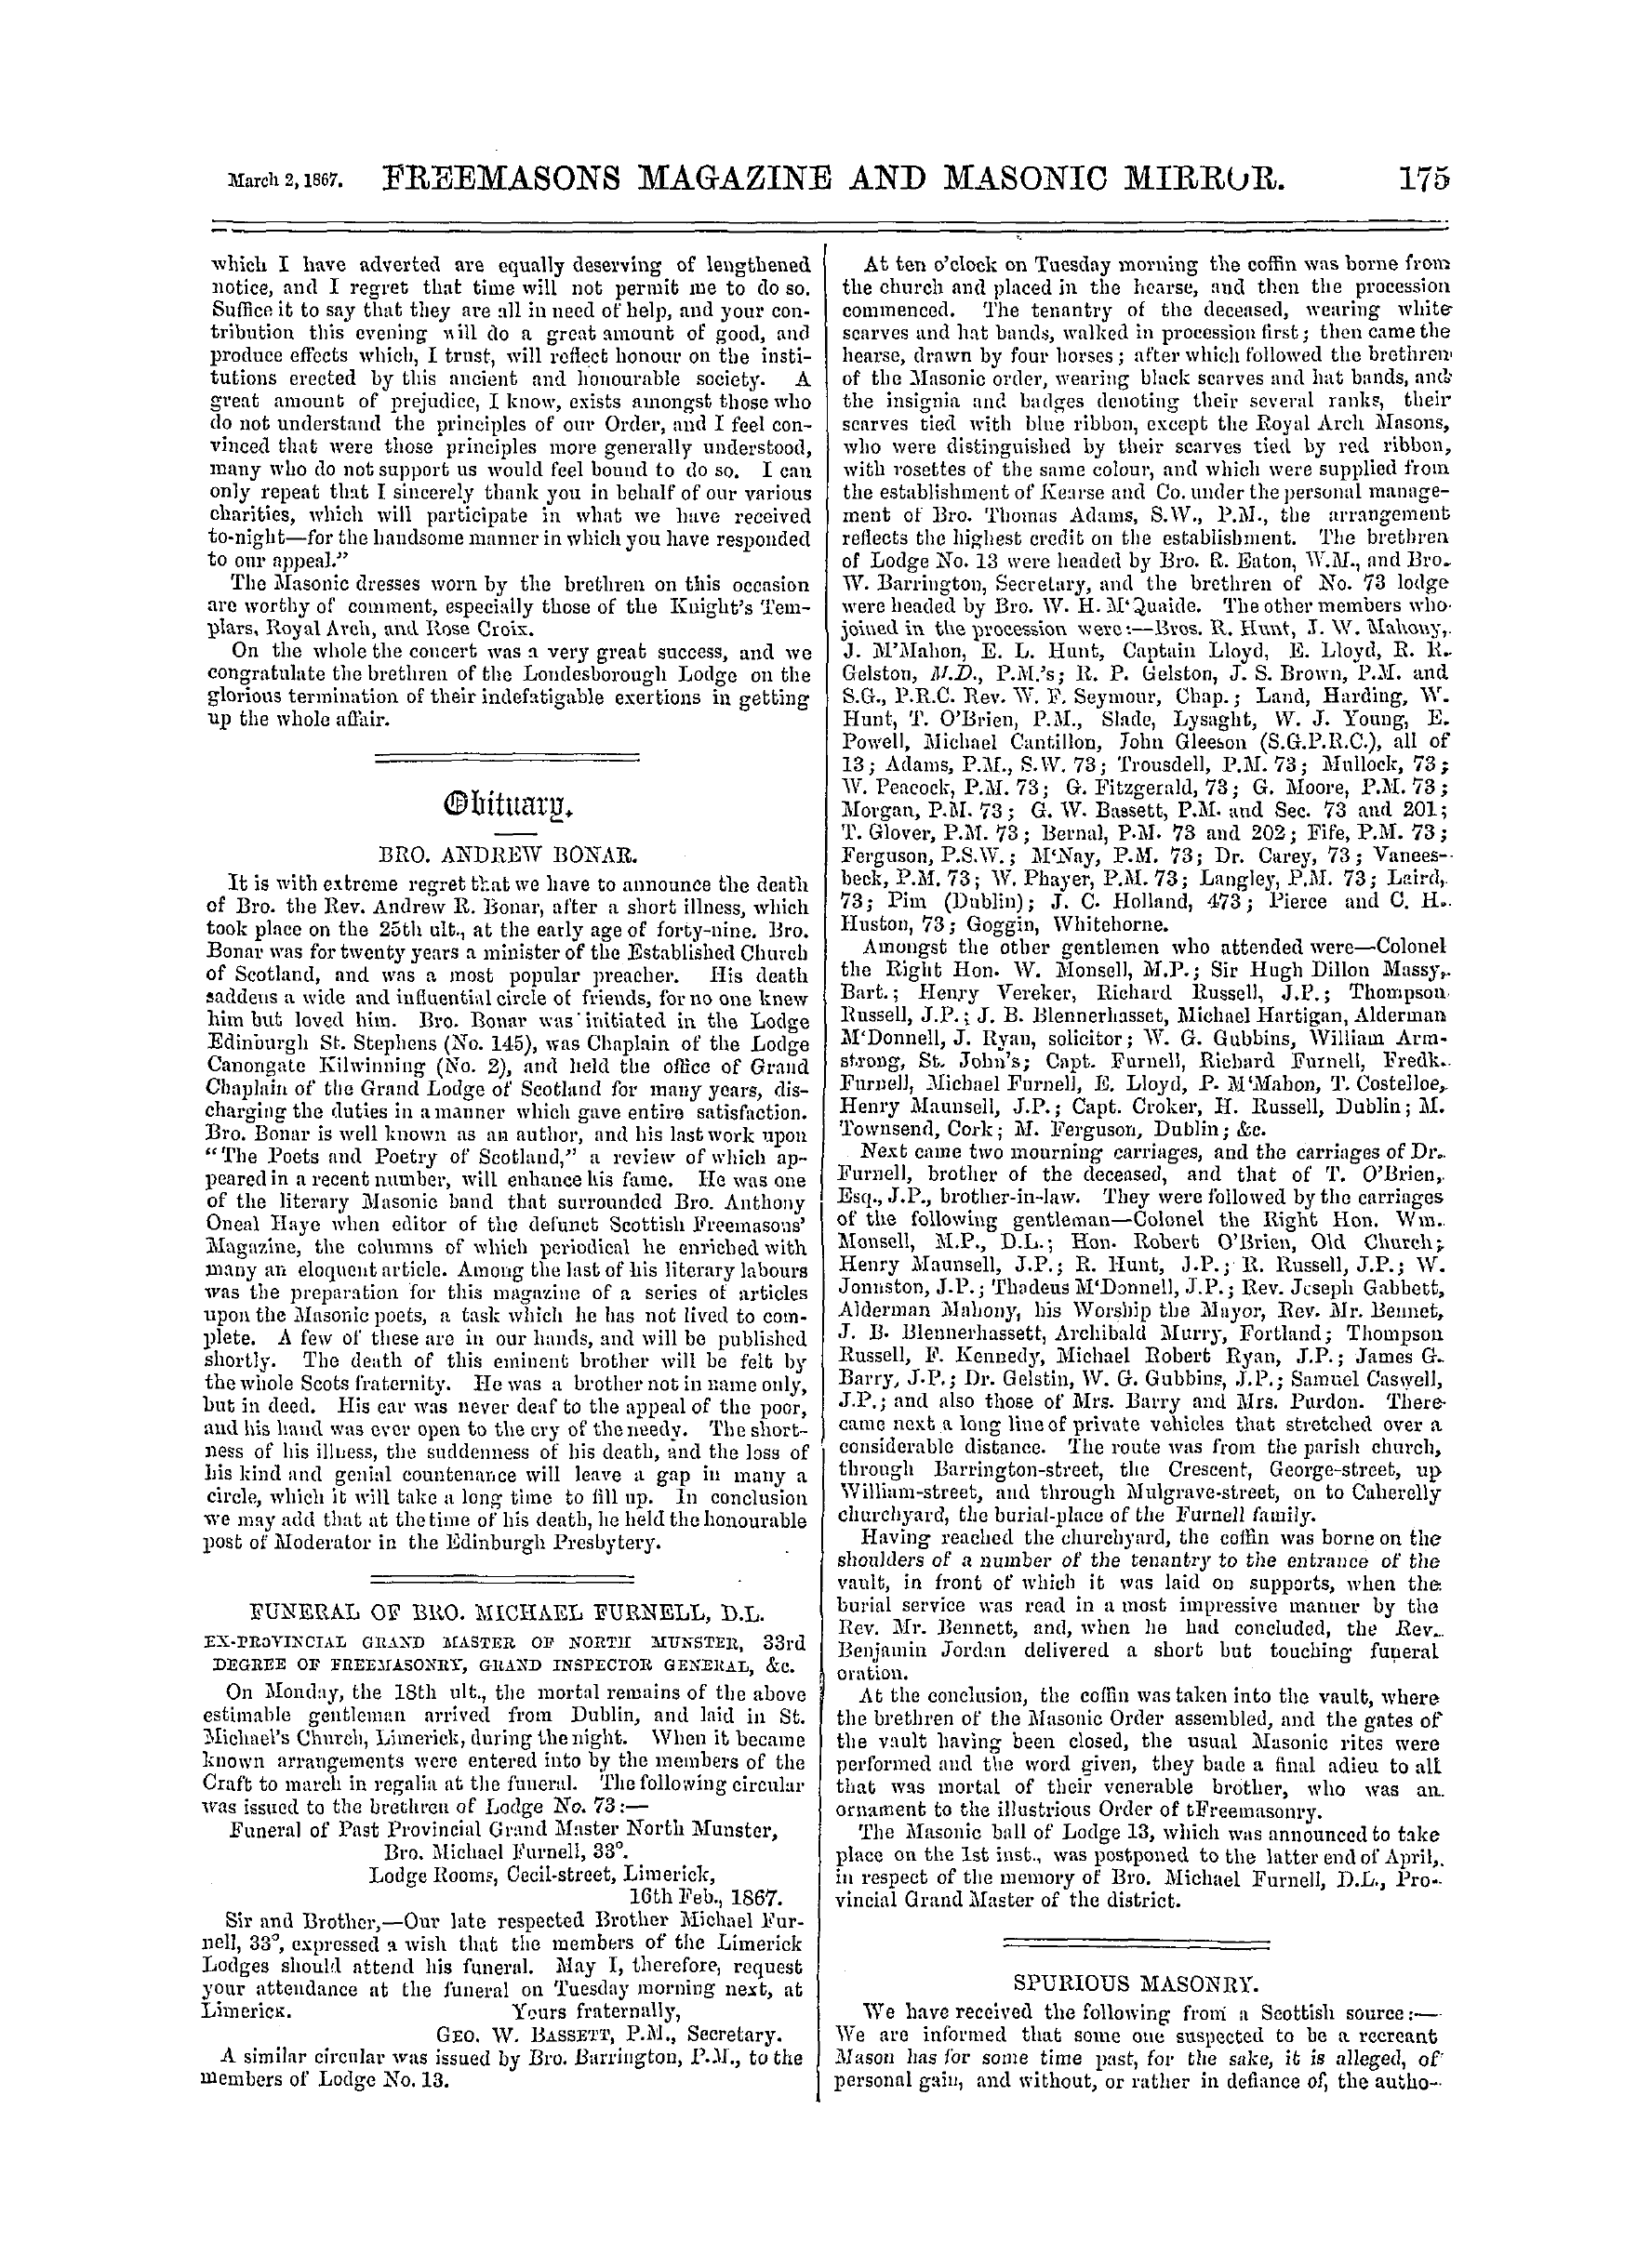 The Freemasons' Monthly Magazine: 1867-03-02: 15